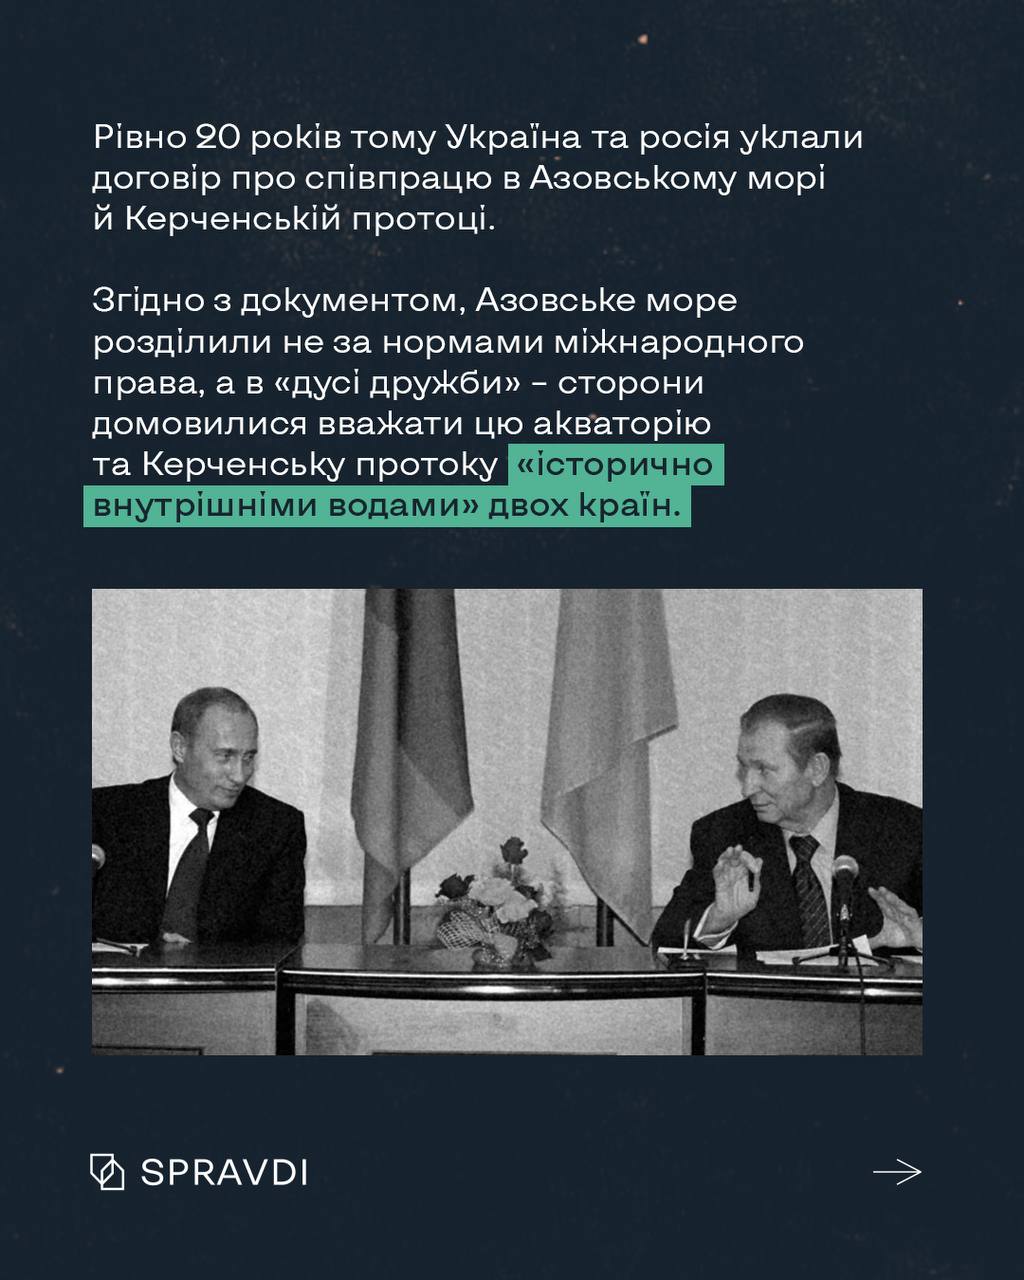 20 років тому Україна та росія уклали договір про співпрацю в Азовському морі